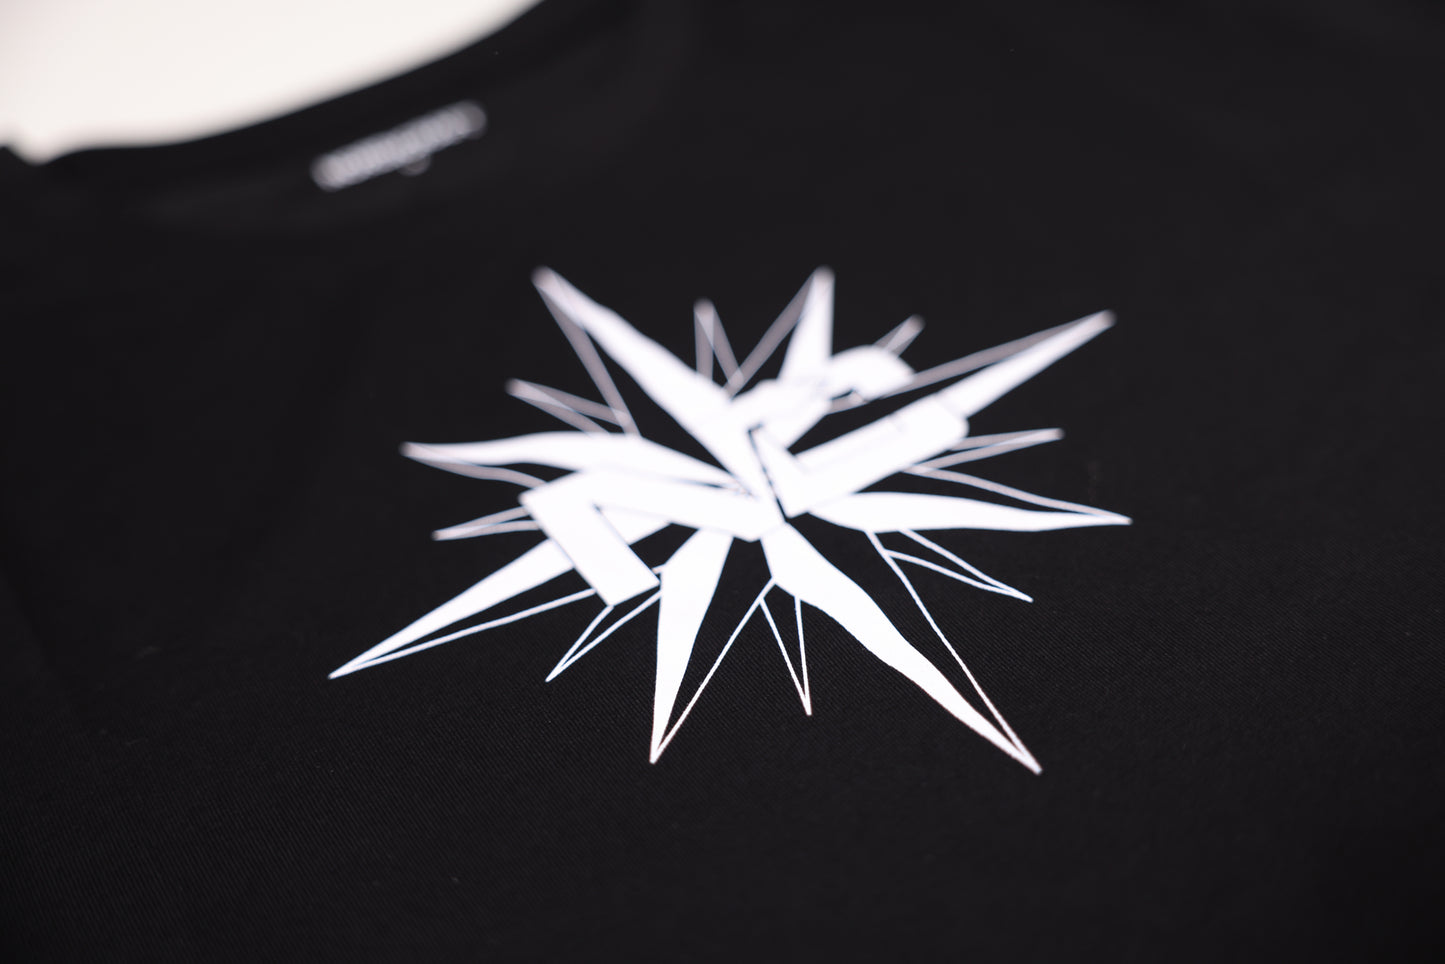 Nordicraft T shirt